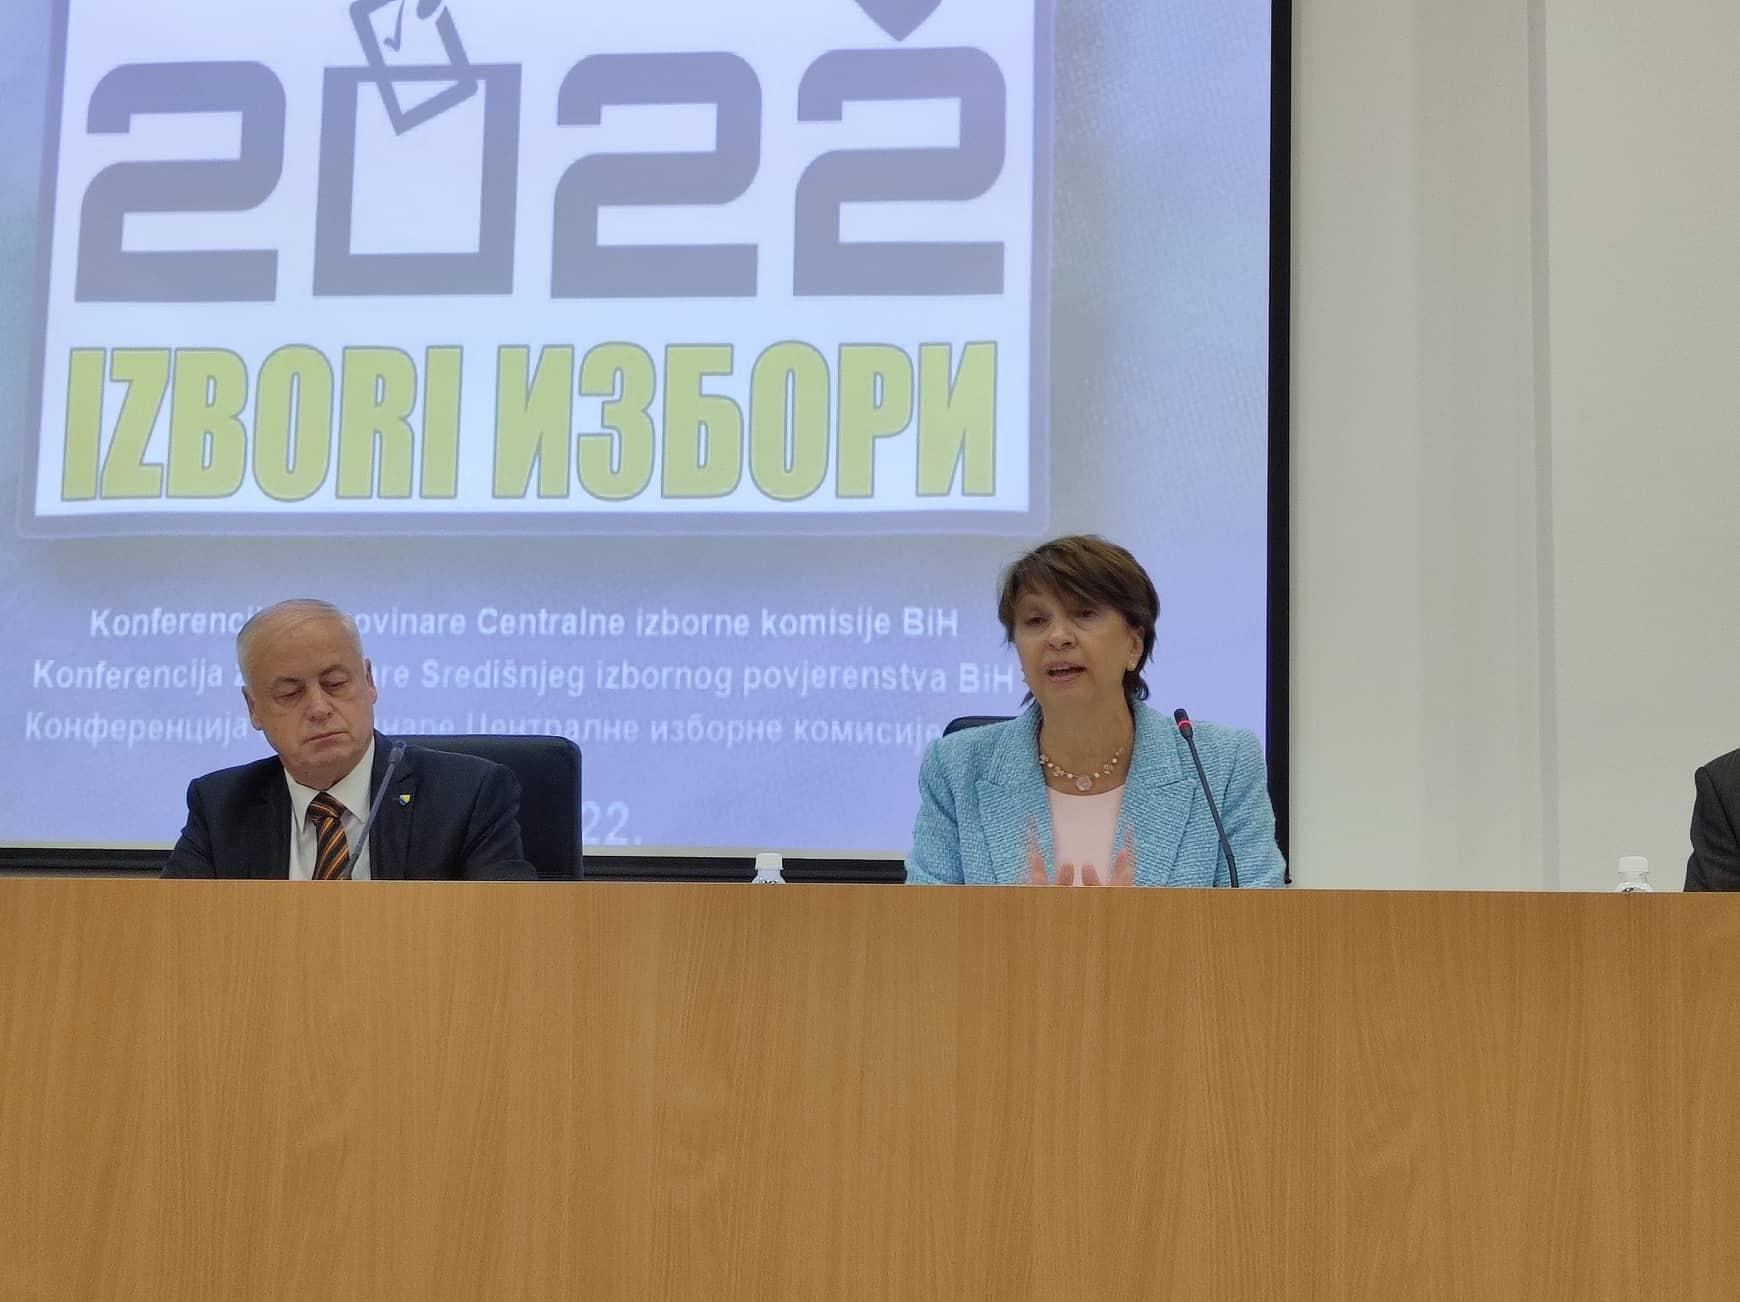 Irena Hadžiabdić: Zakon je jasno propisao kada se izbori mogu ponoviti - Avaz